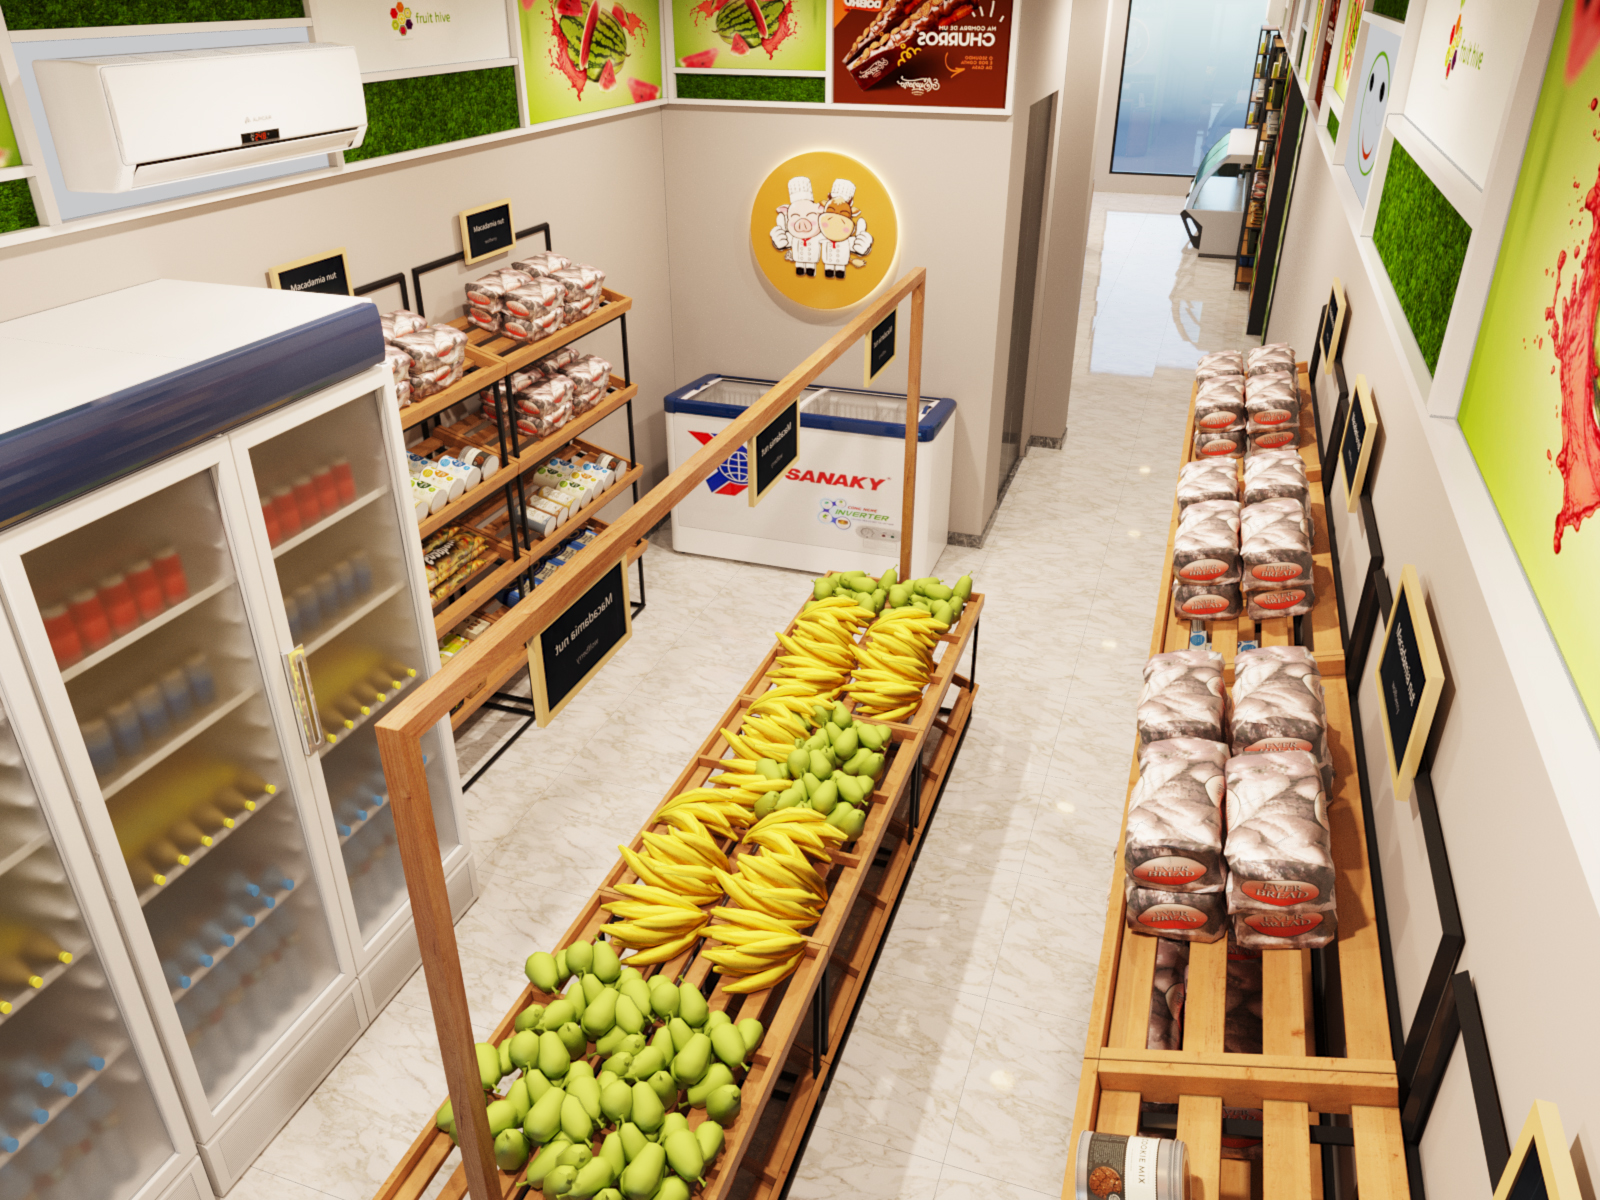 Các khu vực chức năng trong siêu thị được thiết kế khoa học, thuận tiện cho cả khách mua lẫn người quản lý theo dõi, kiểm soát.